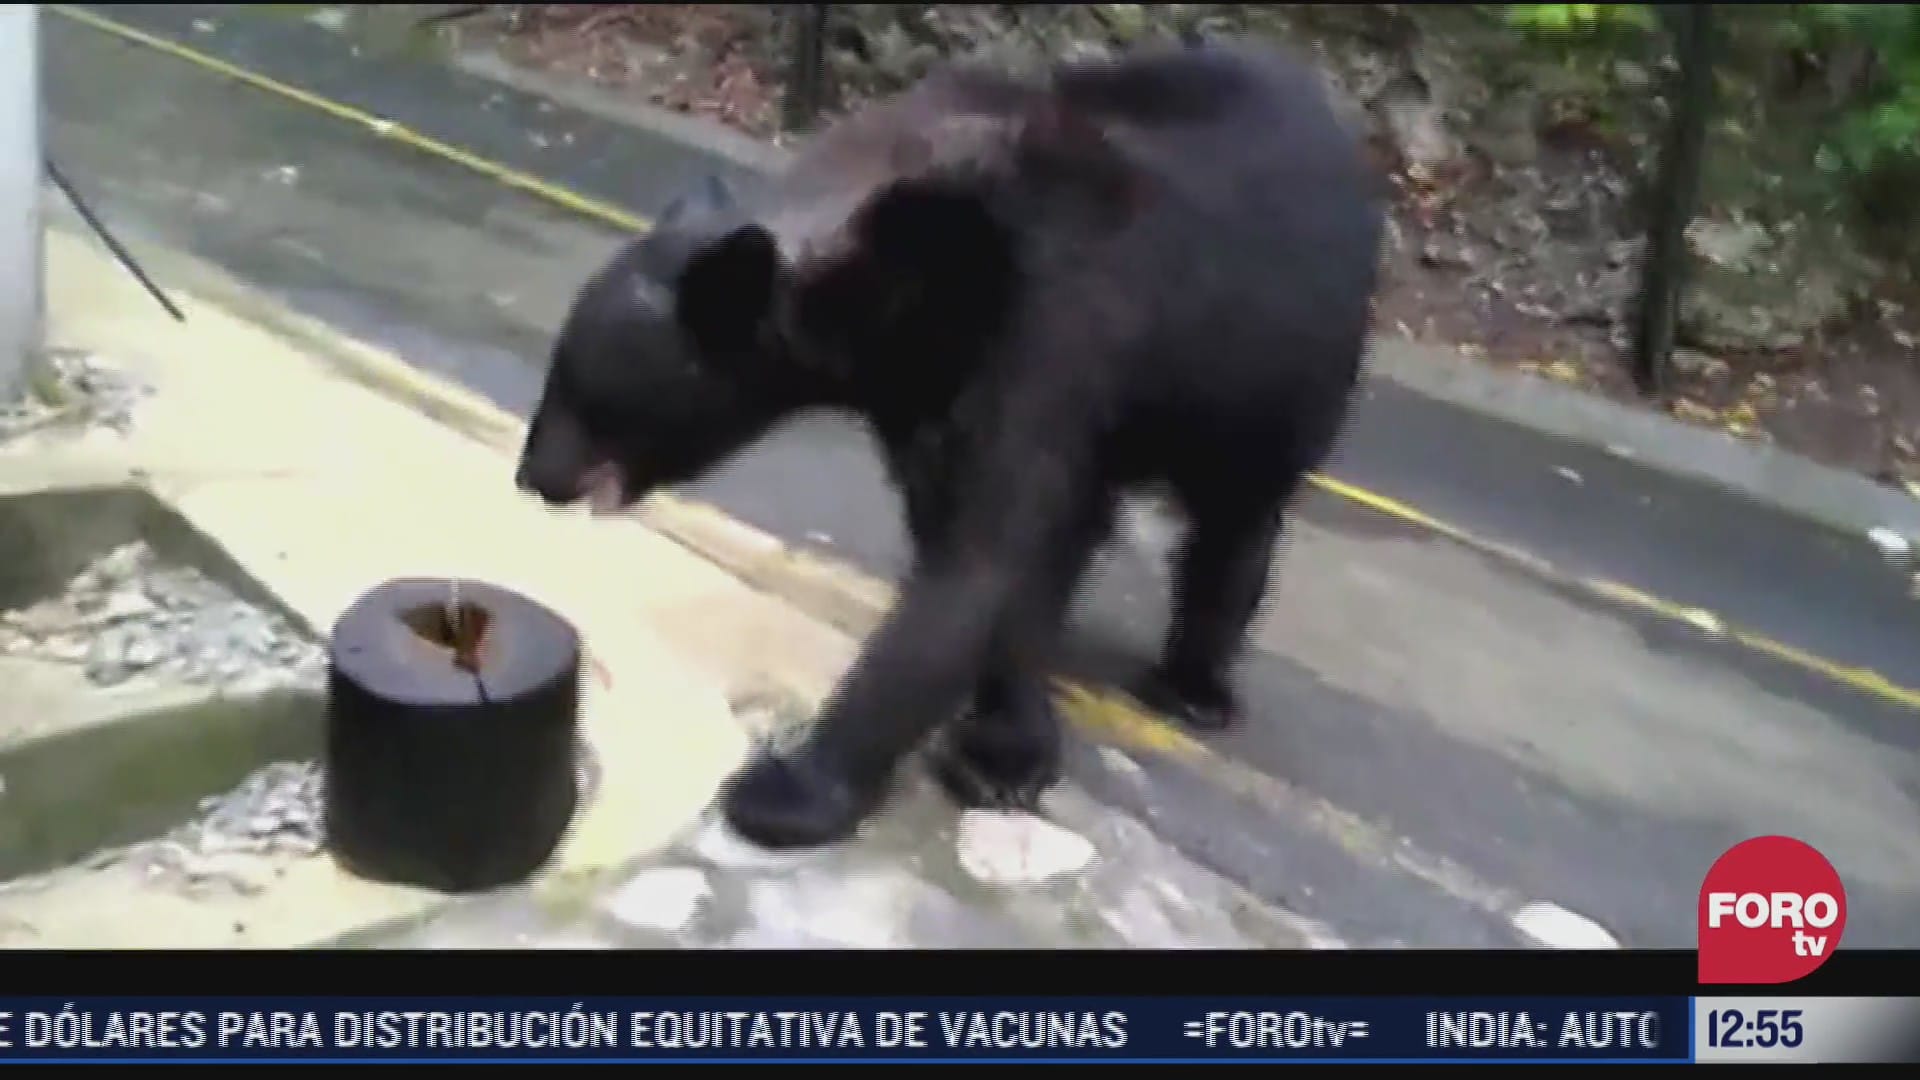 video de hombre que arroja gas lacrimogeno a oso causa indignacion